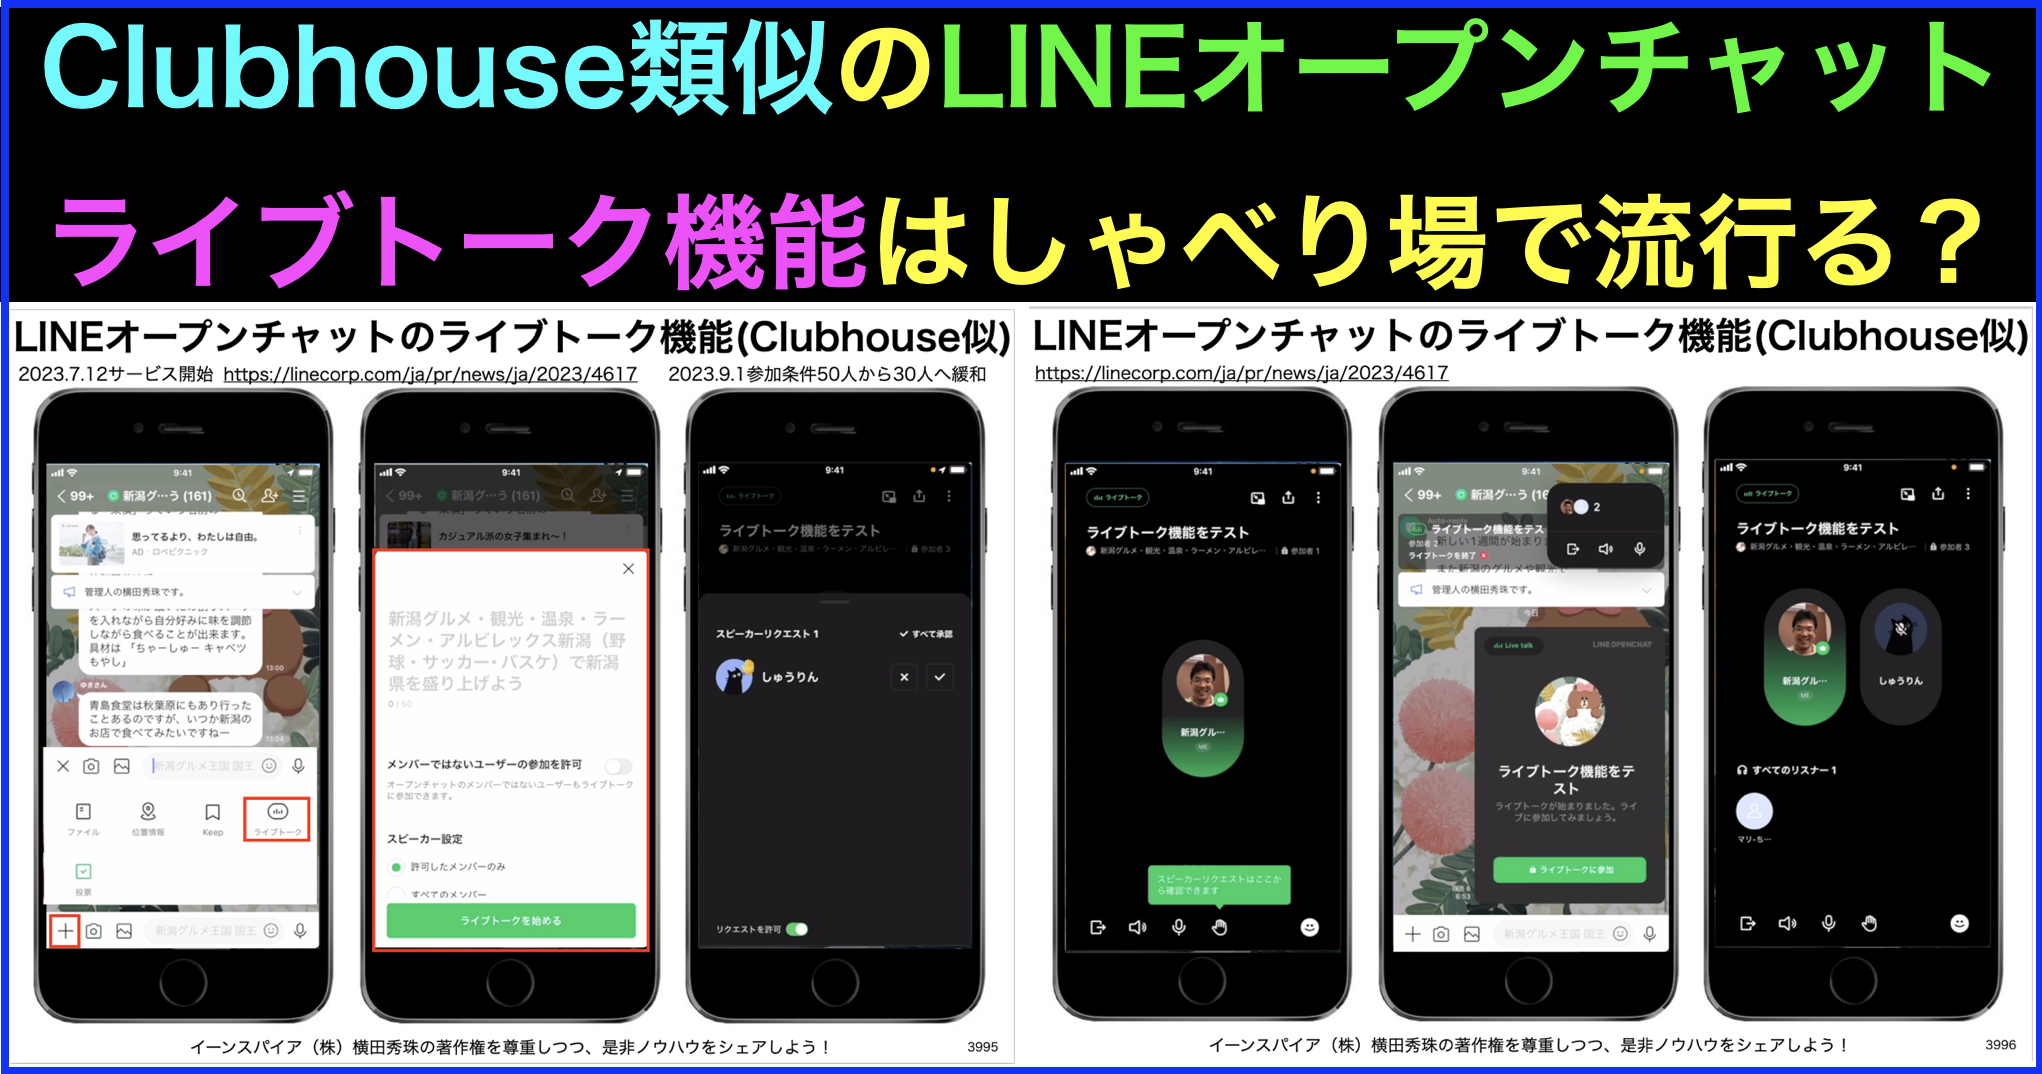 LINEオープンチャットのライブトーク機能はClubhouse類似